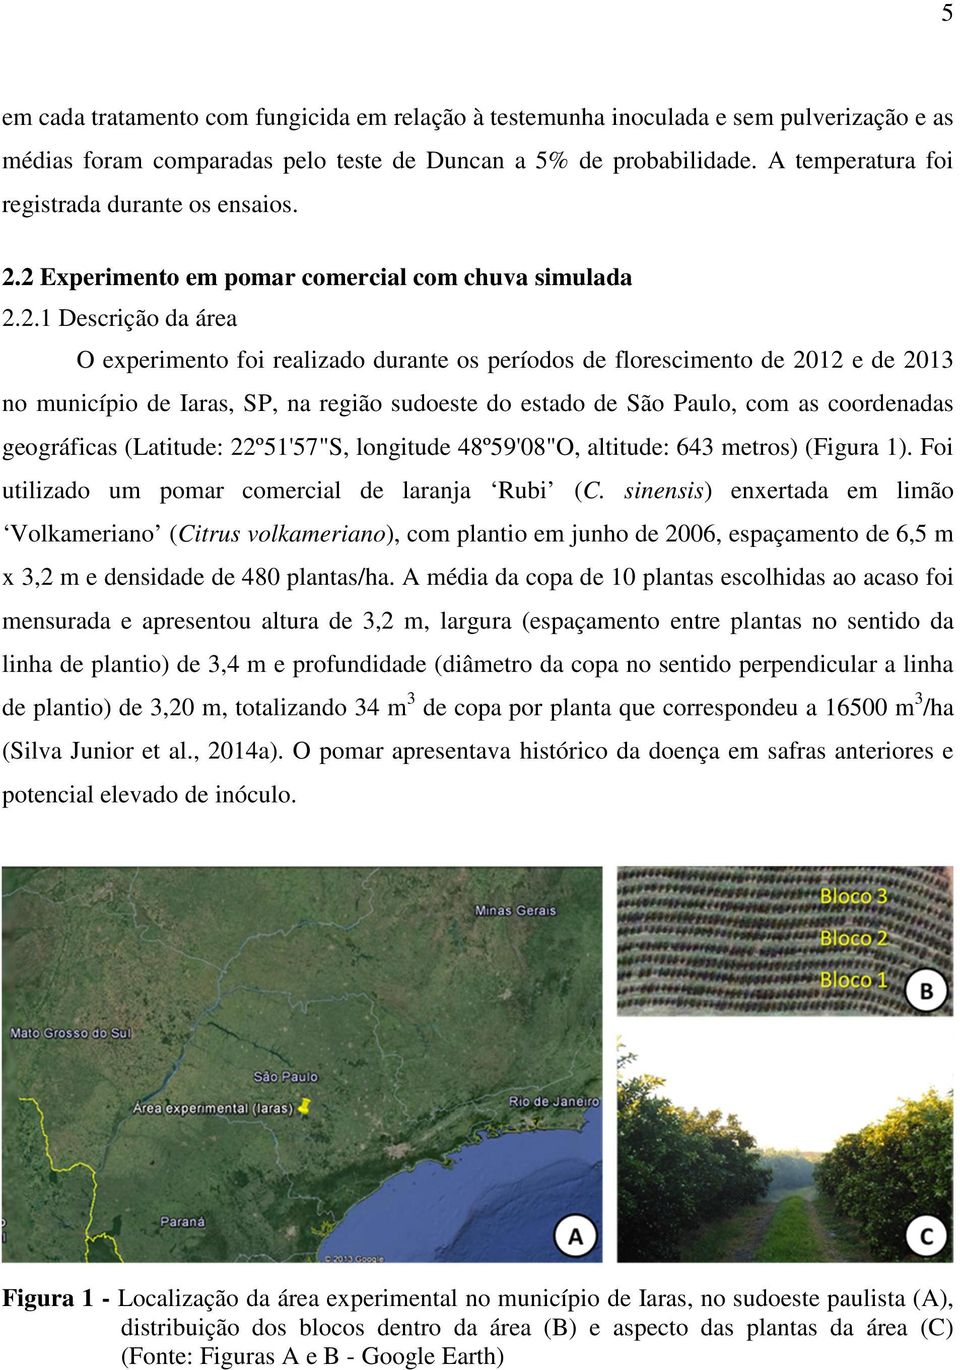 2 Experimento em pomar comercial com chuva simulada 2.2.1 Descrição da área O experimento foi realizado durante os períodos de florescimento de 2012 e de 2013 no município de Iaras, SP, na região